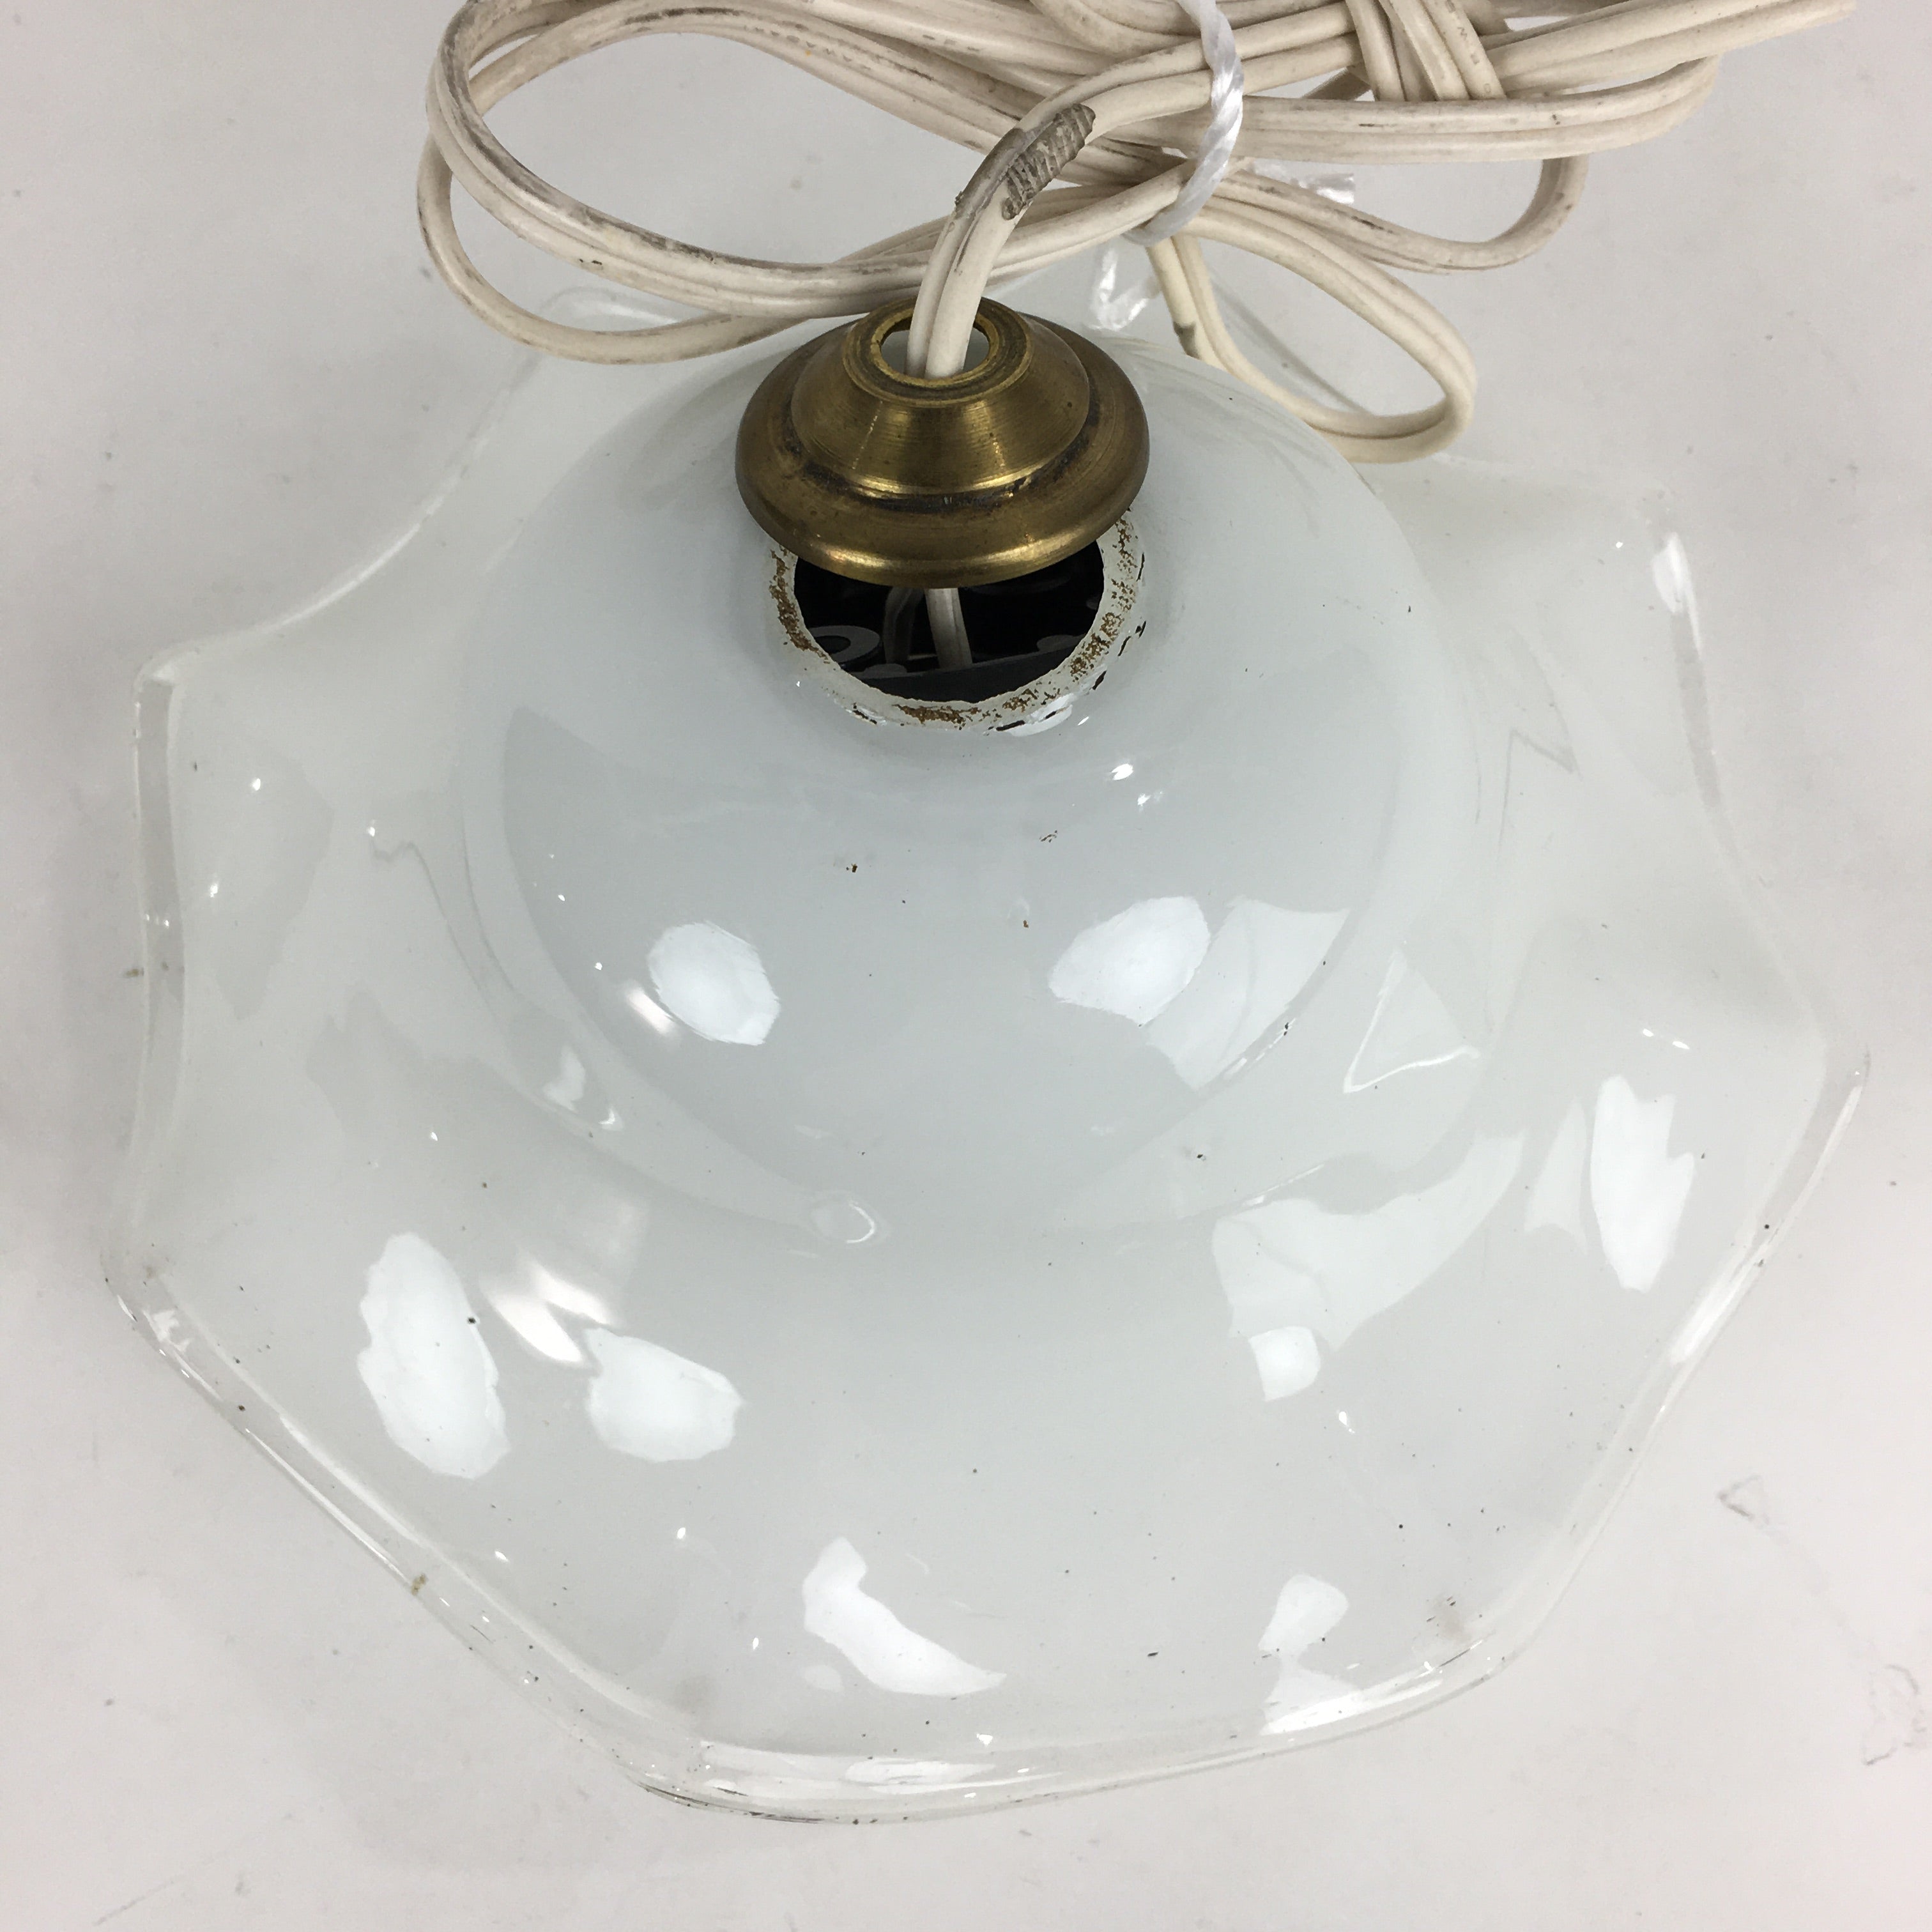 Japanese Glass Lamp Shade And Light Bulb Set Vtg White Glass JK367